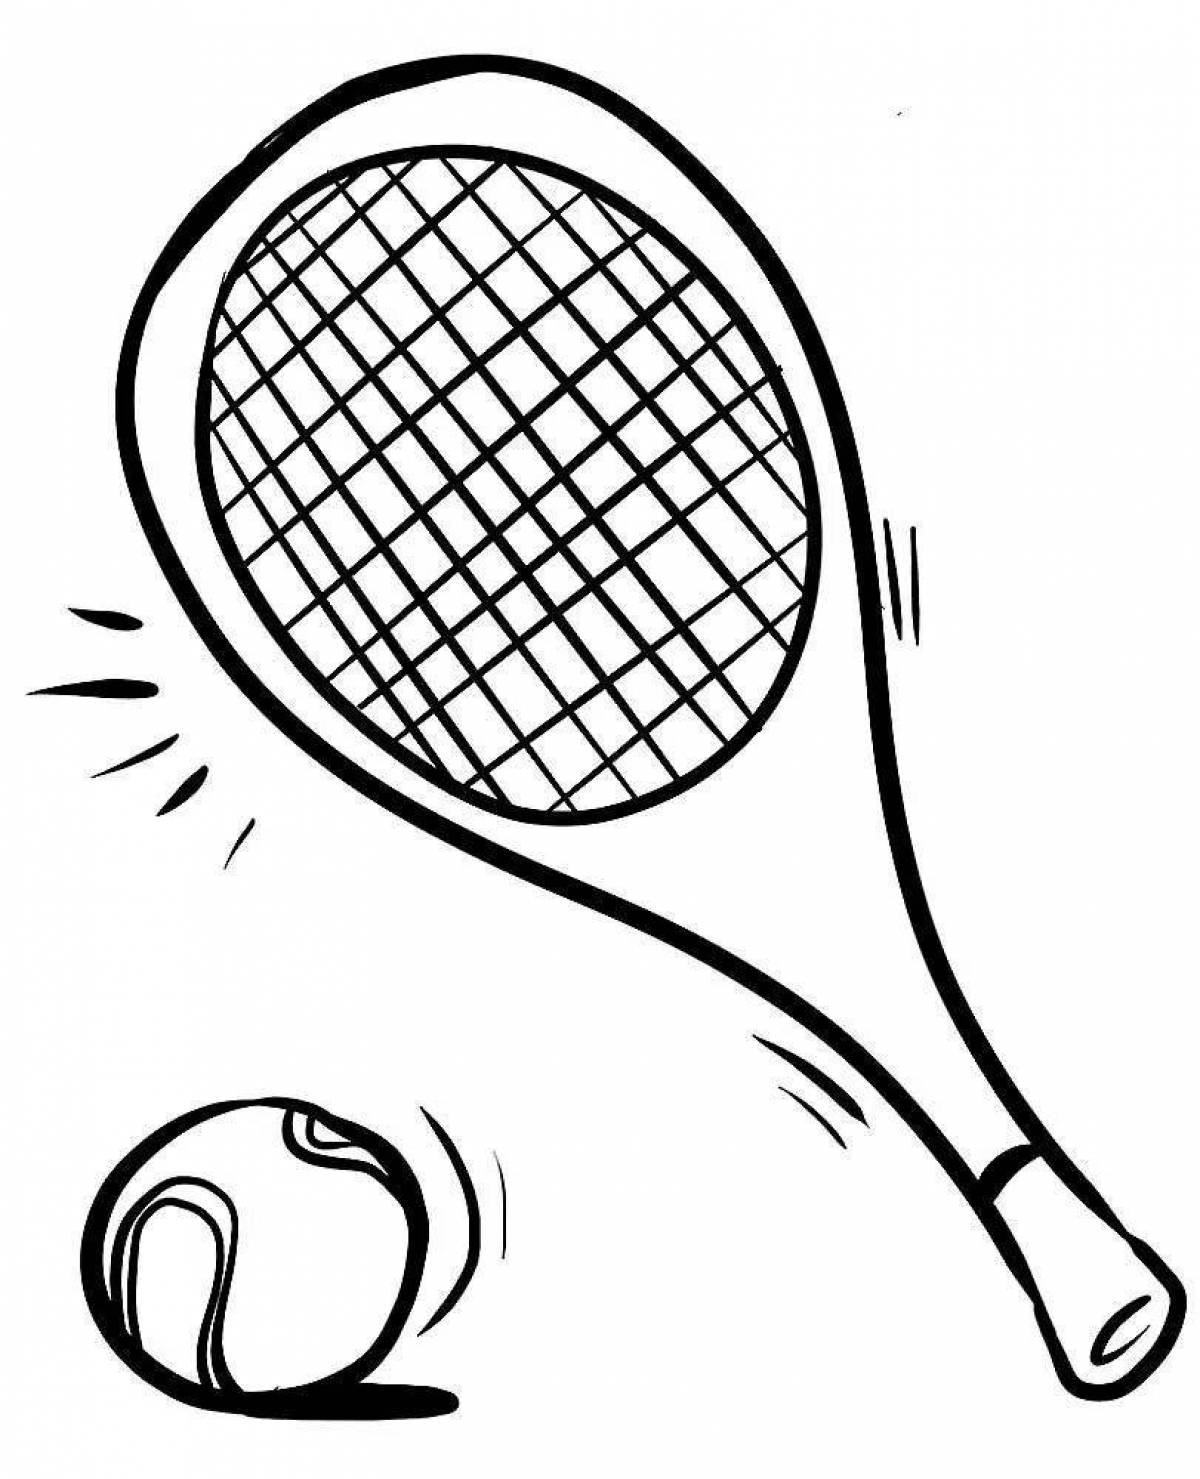 Сказочная теннисная раскраска для детей